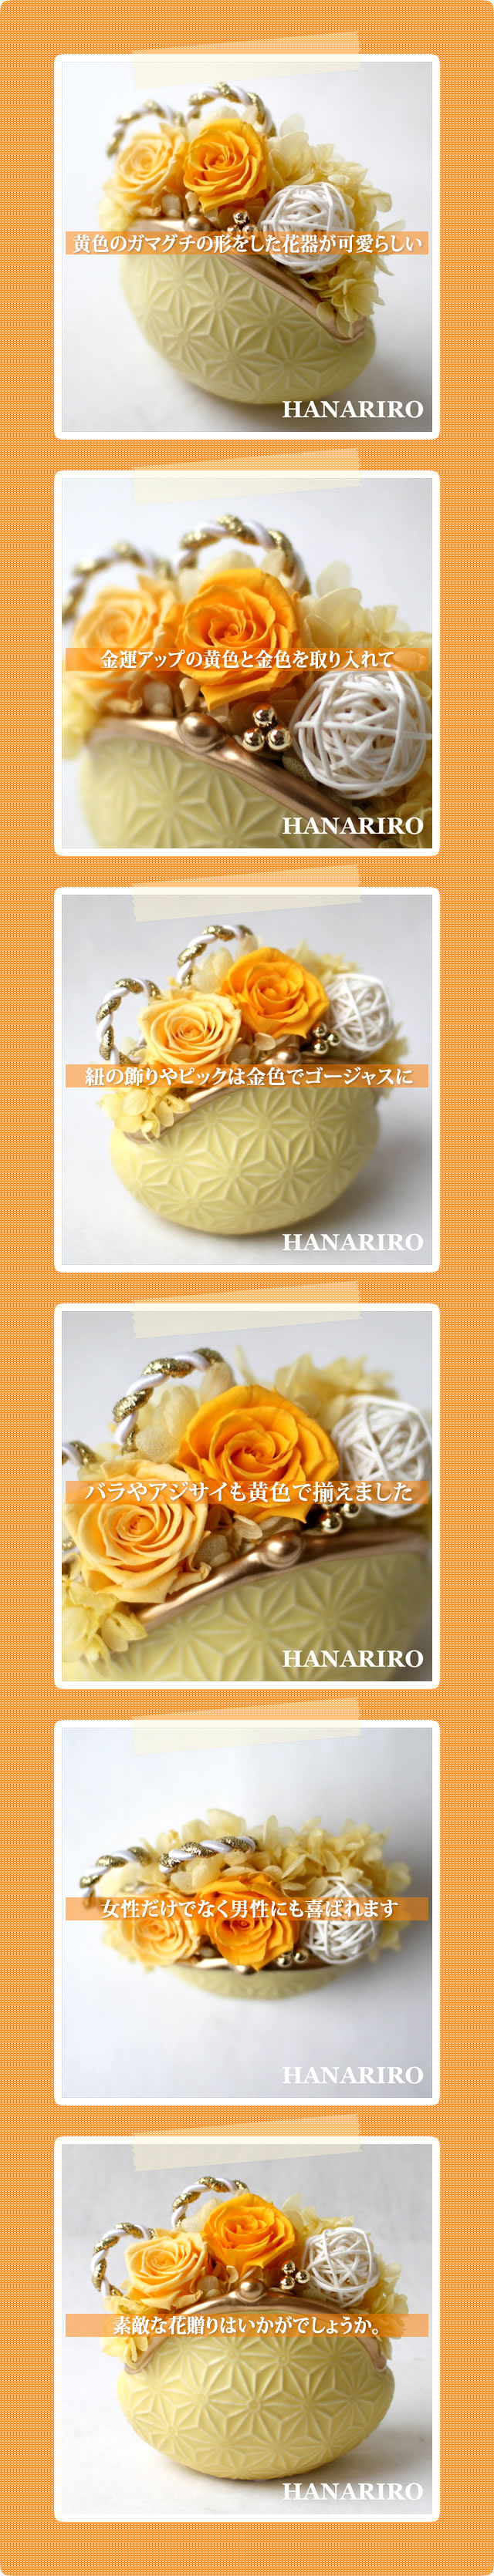 アレンジ「幸せの黄色いガマグチ」/プリザーブドフラワーギフト